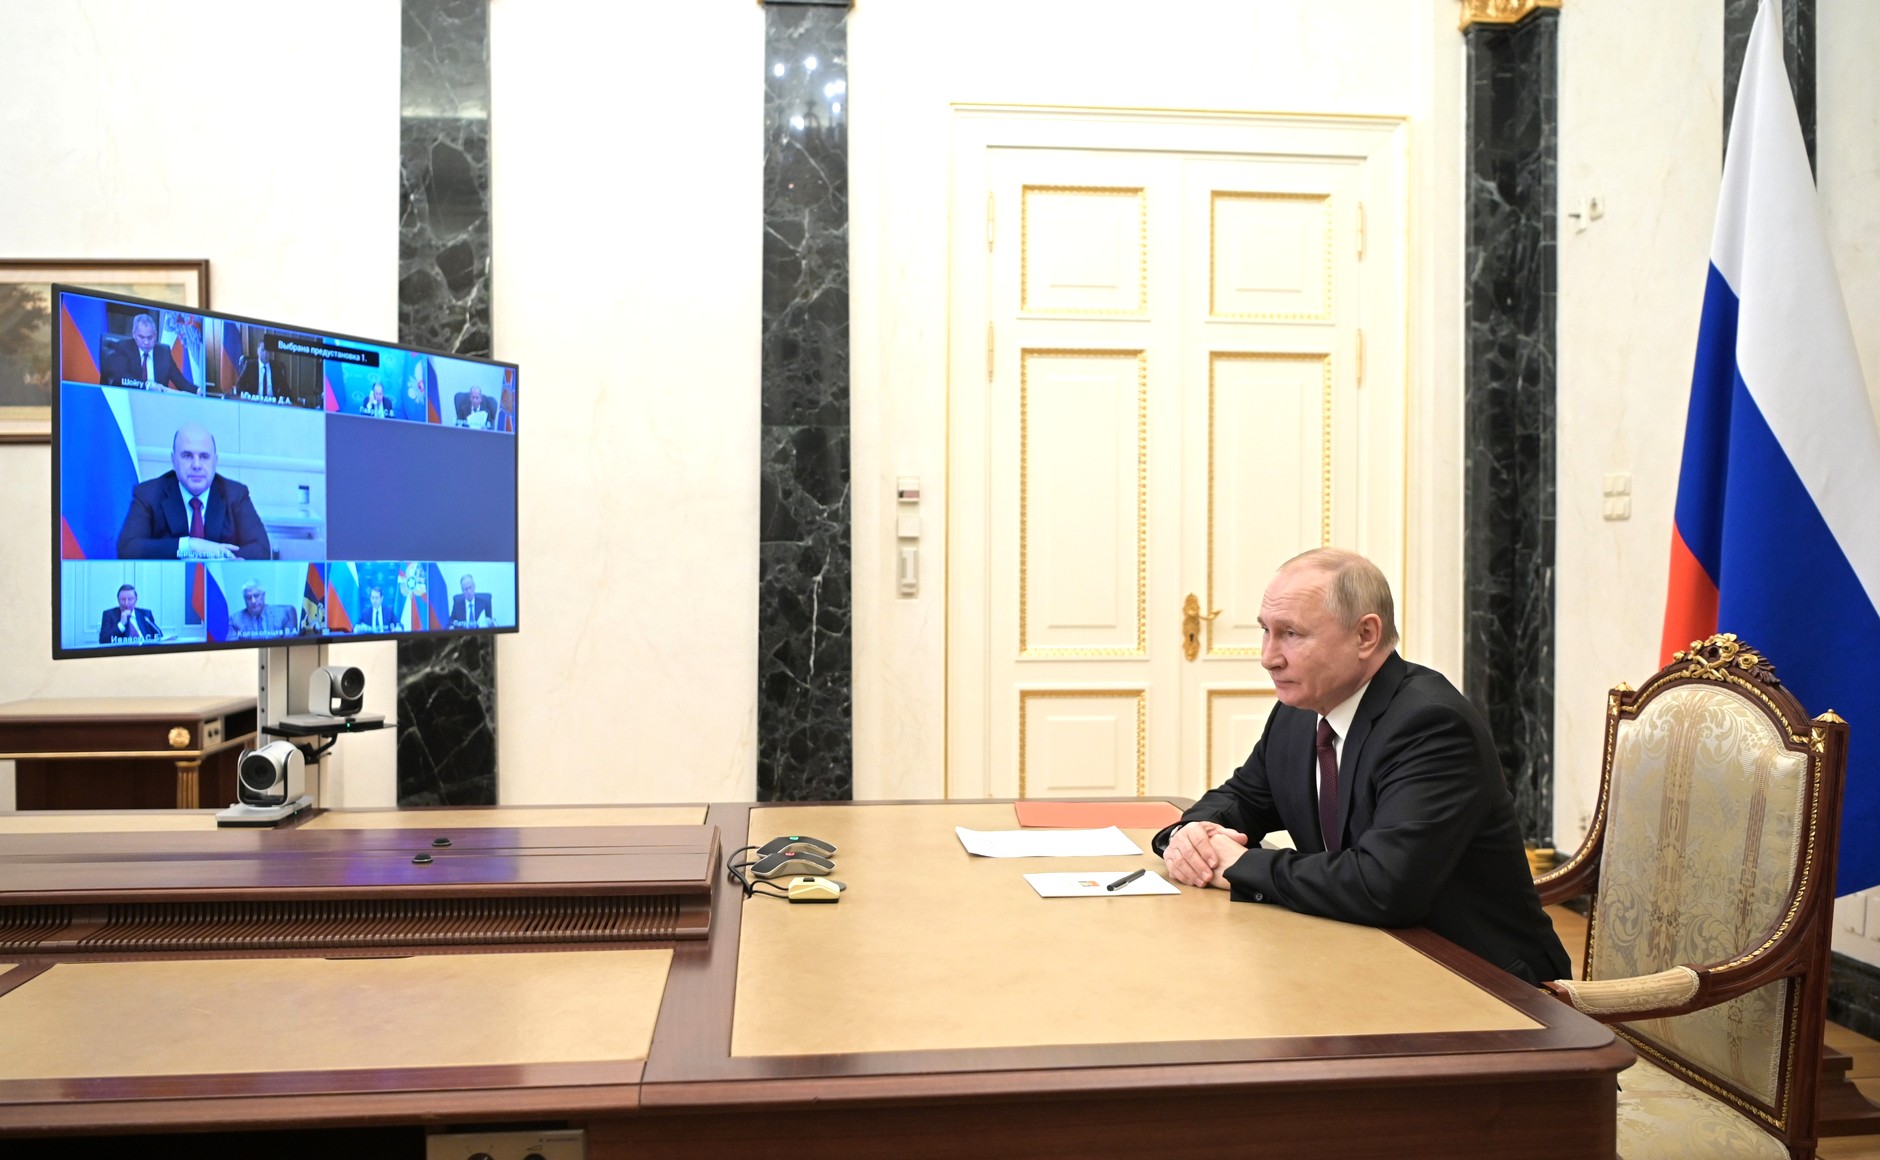 Președintele Rusiei în videoconferință.